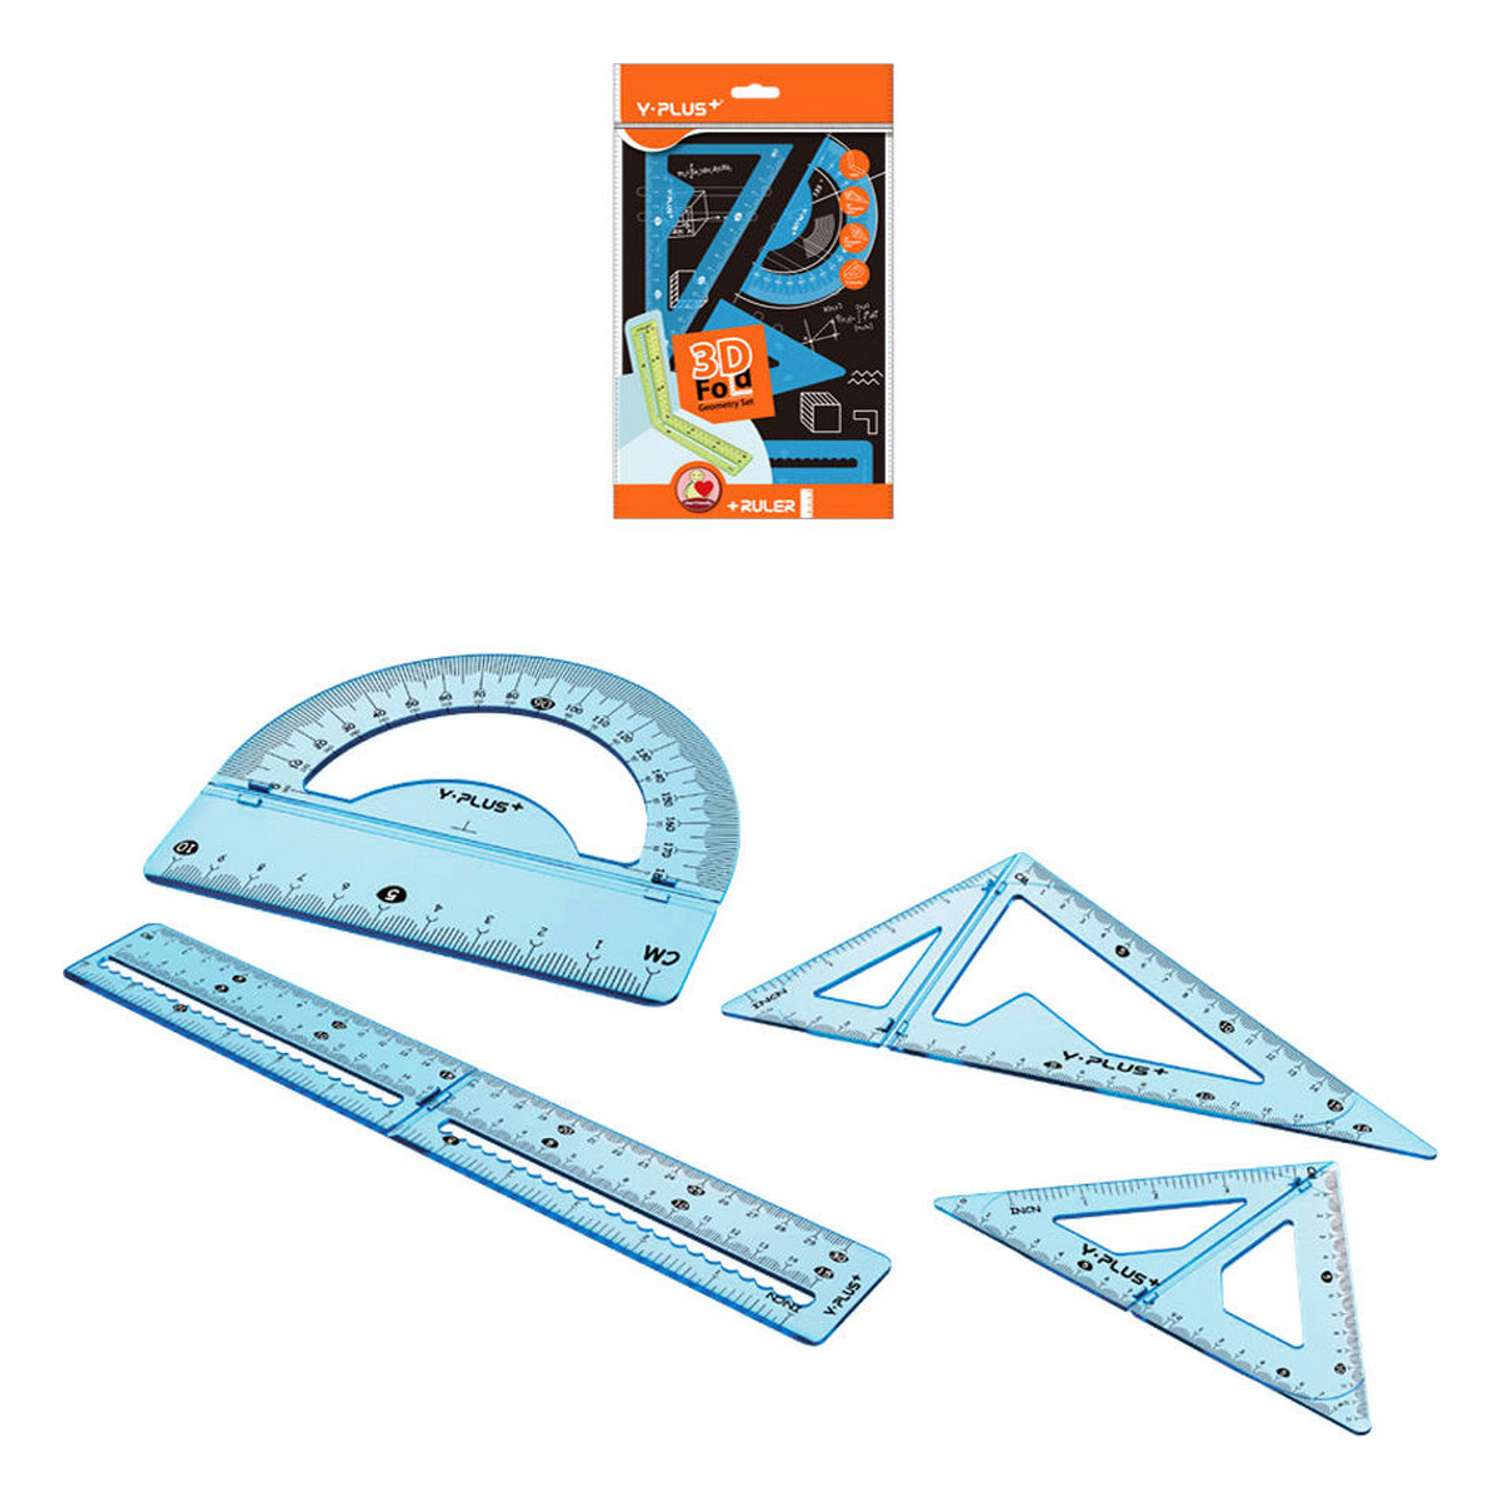 Чертёжный набор Y-plus 3D Fold линейка 15/30см+2угольника+транспортир голубой - фото 3